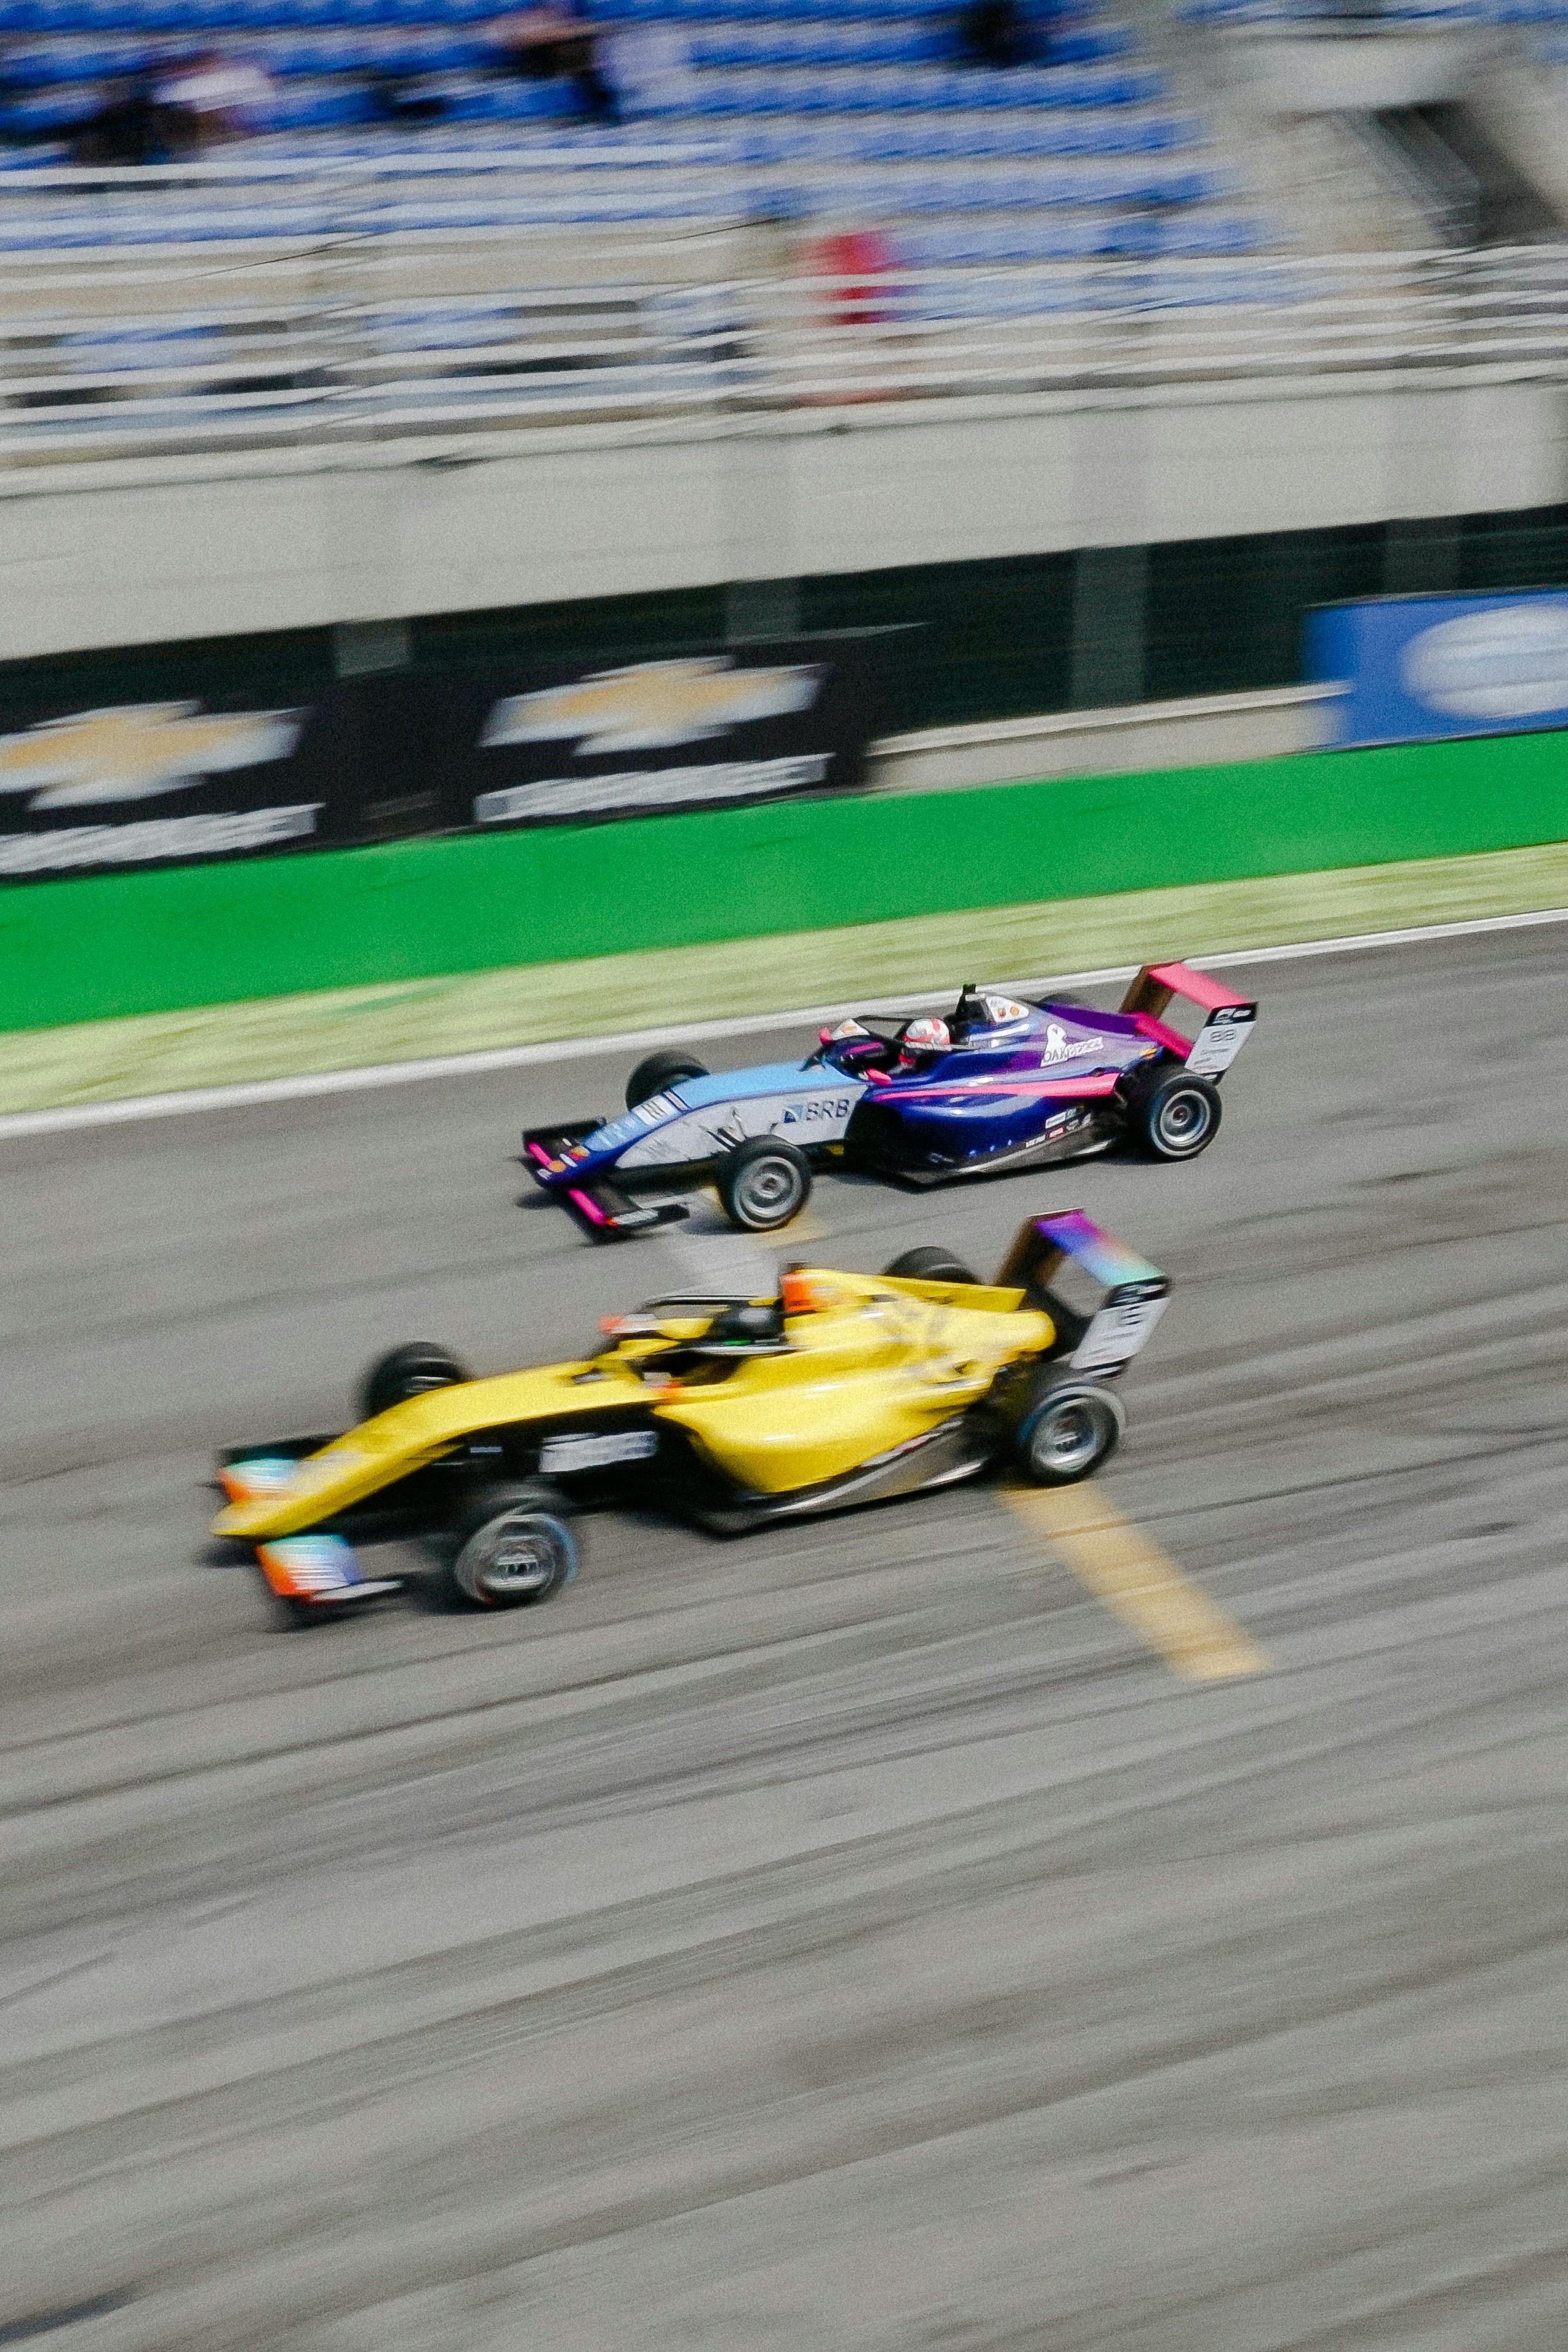 36+ Thousand Car Racing Games Royalty-Free Images, Stock Photos